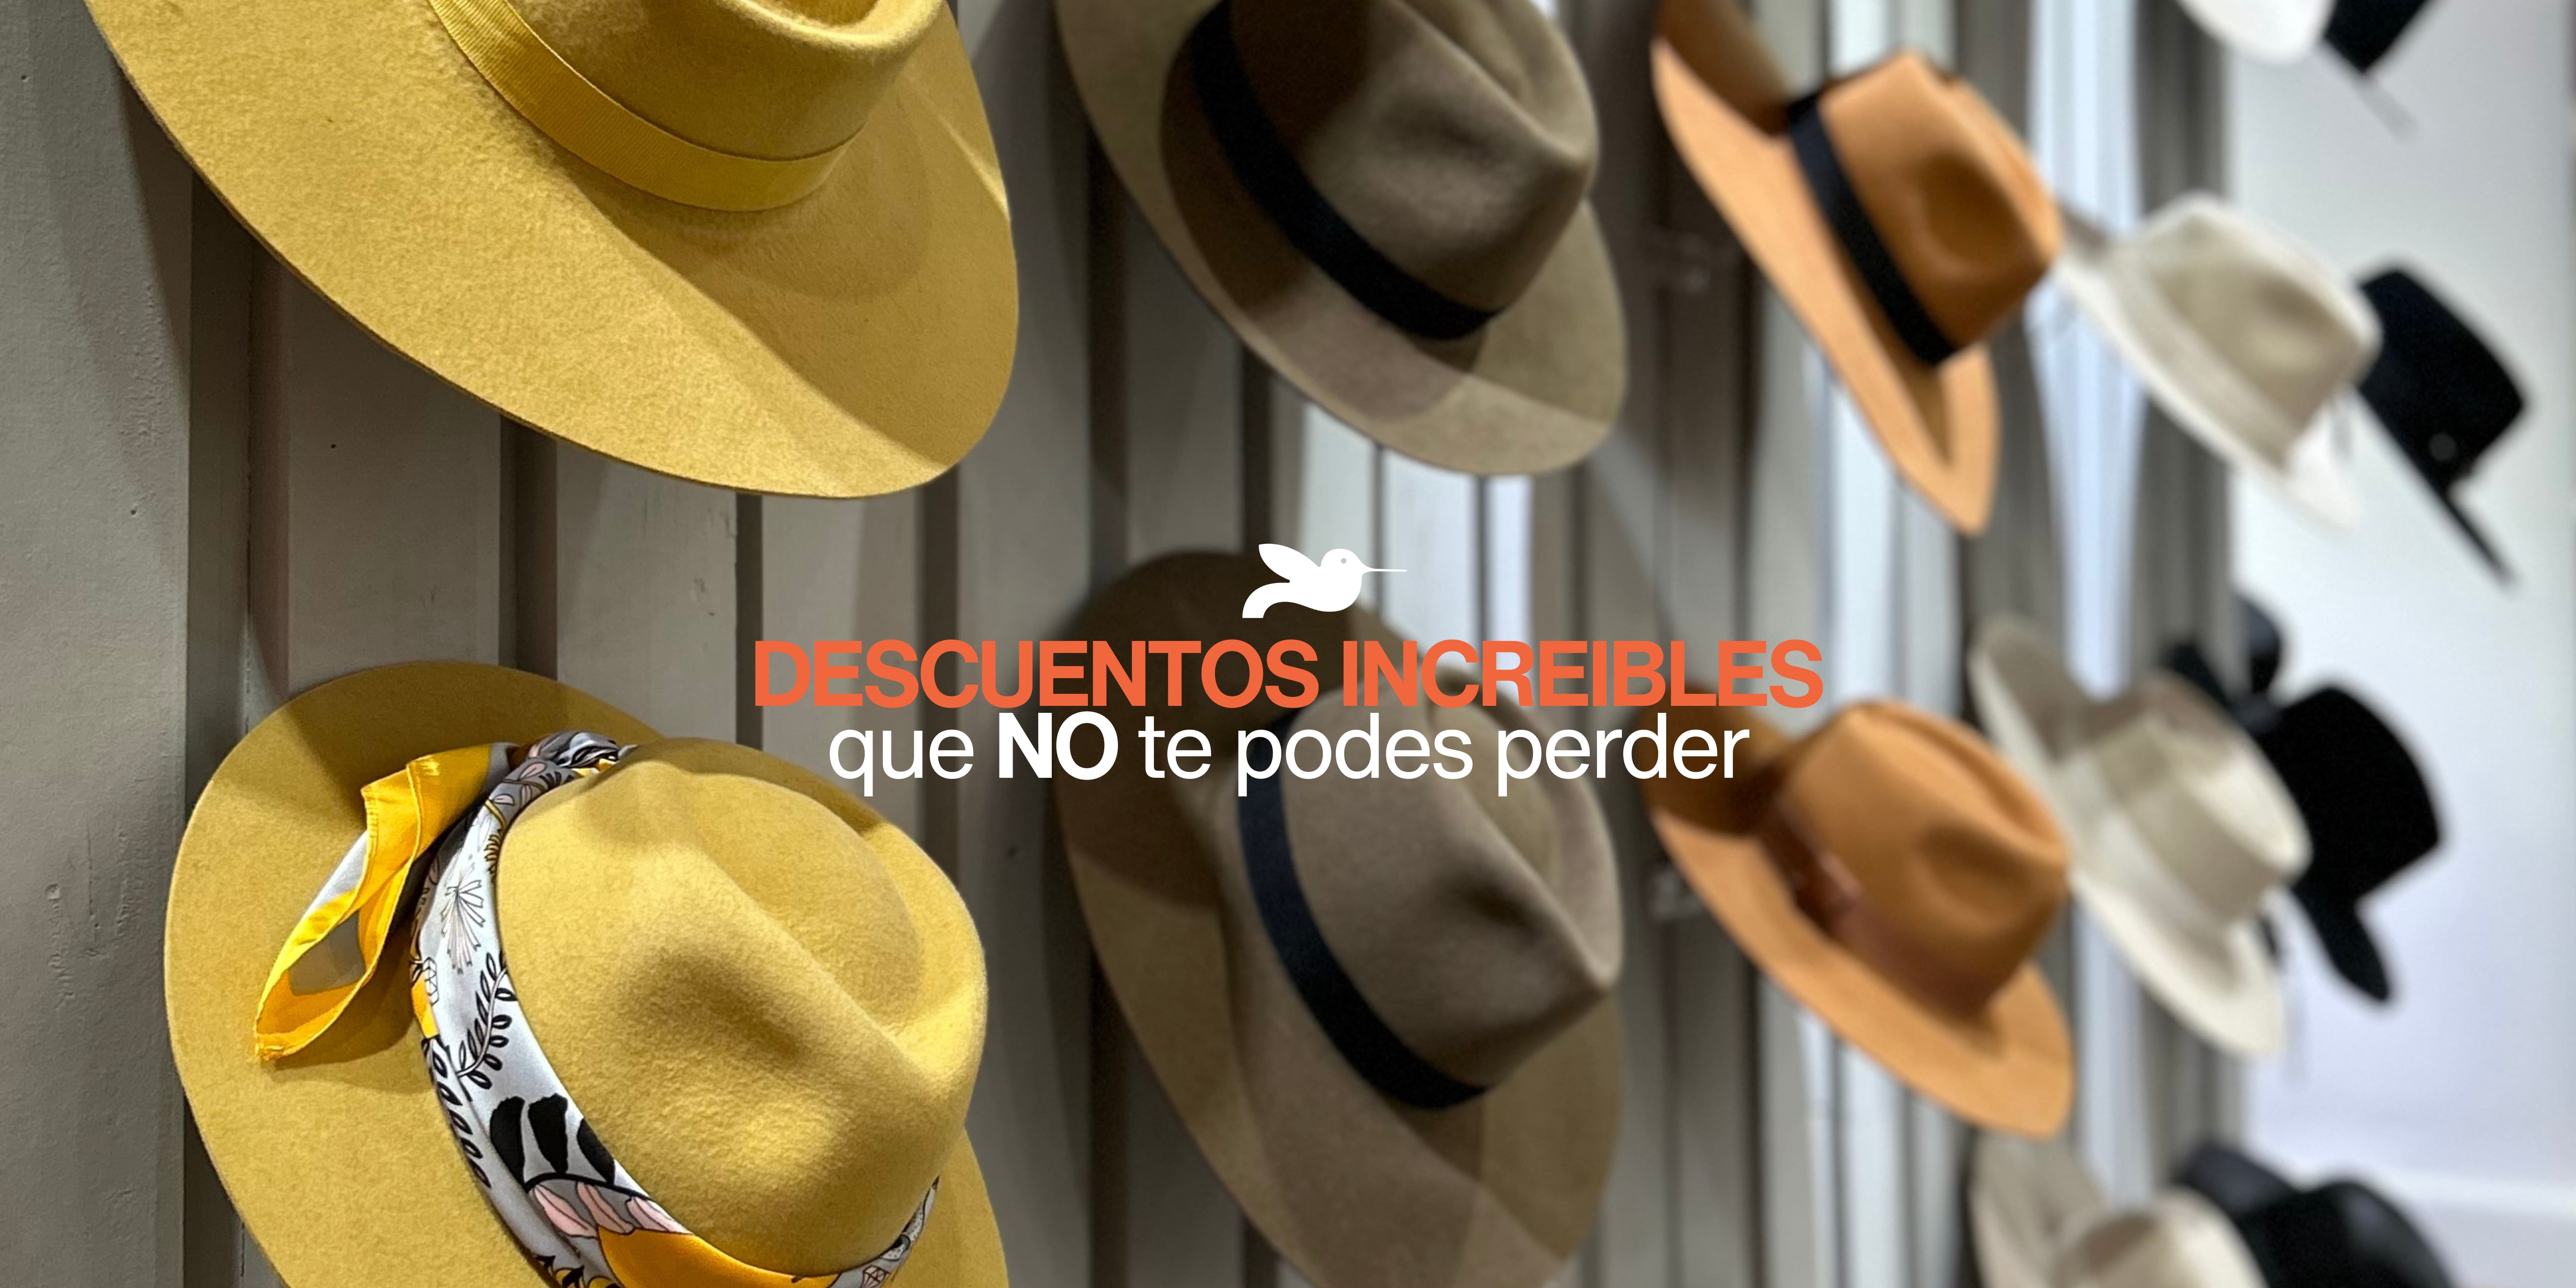 Carrusel Compania de Sombreros